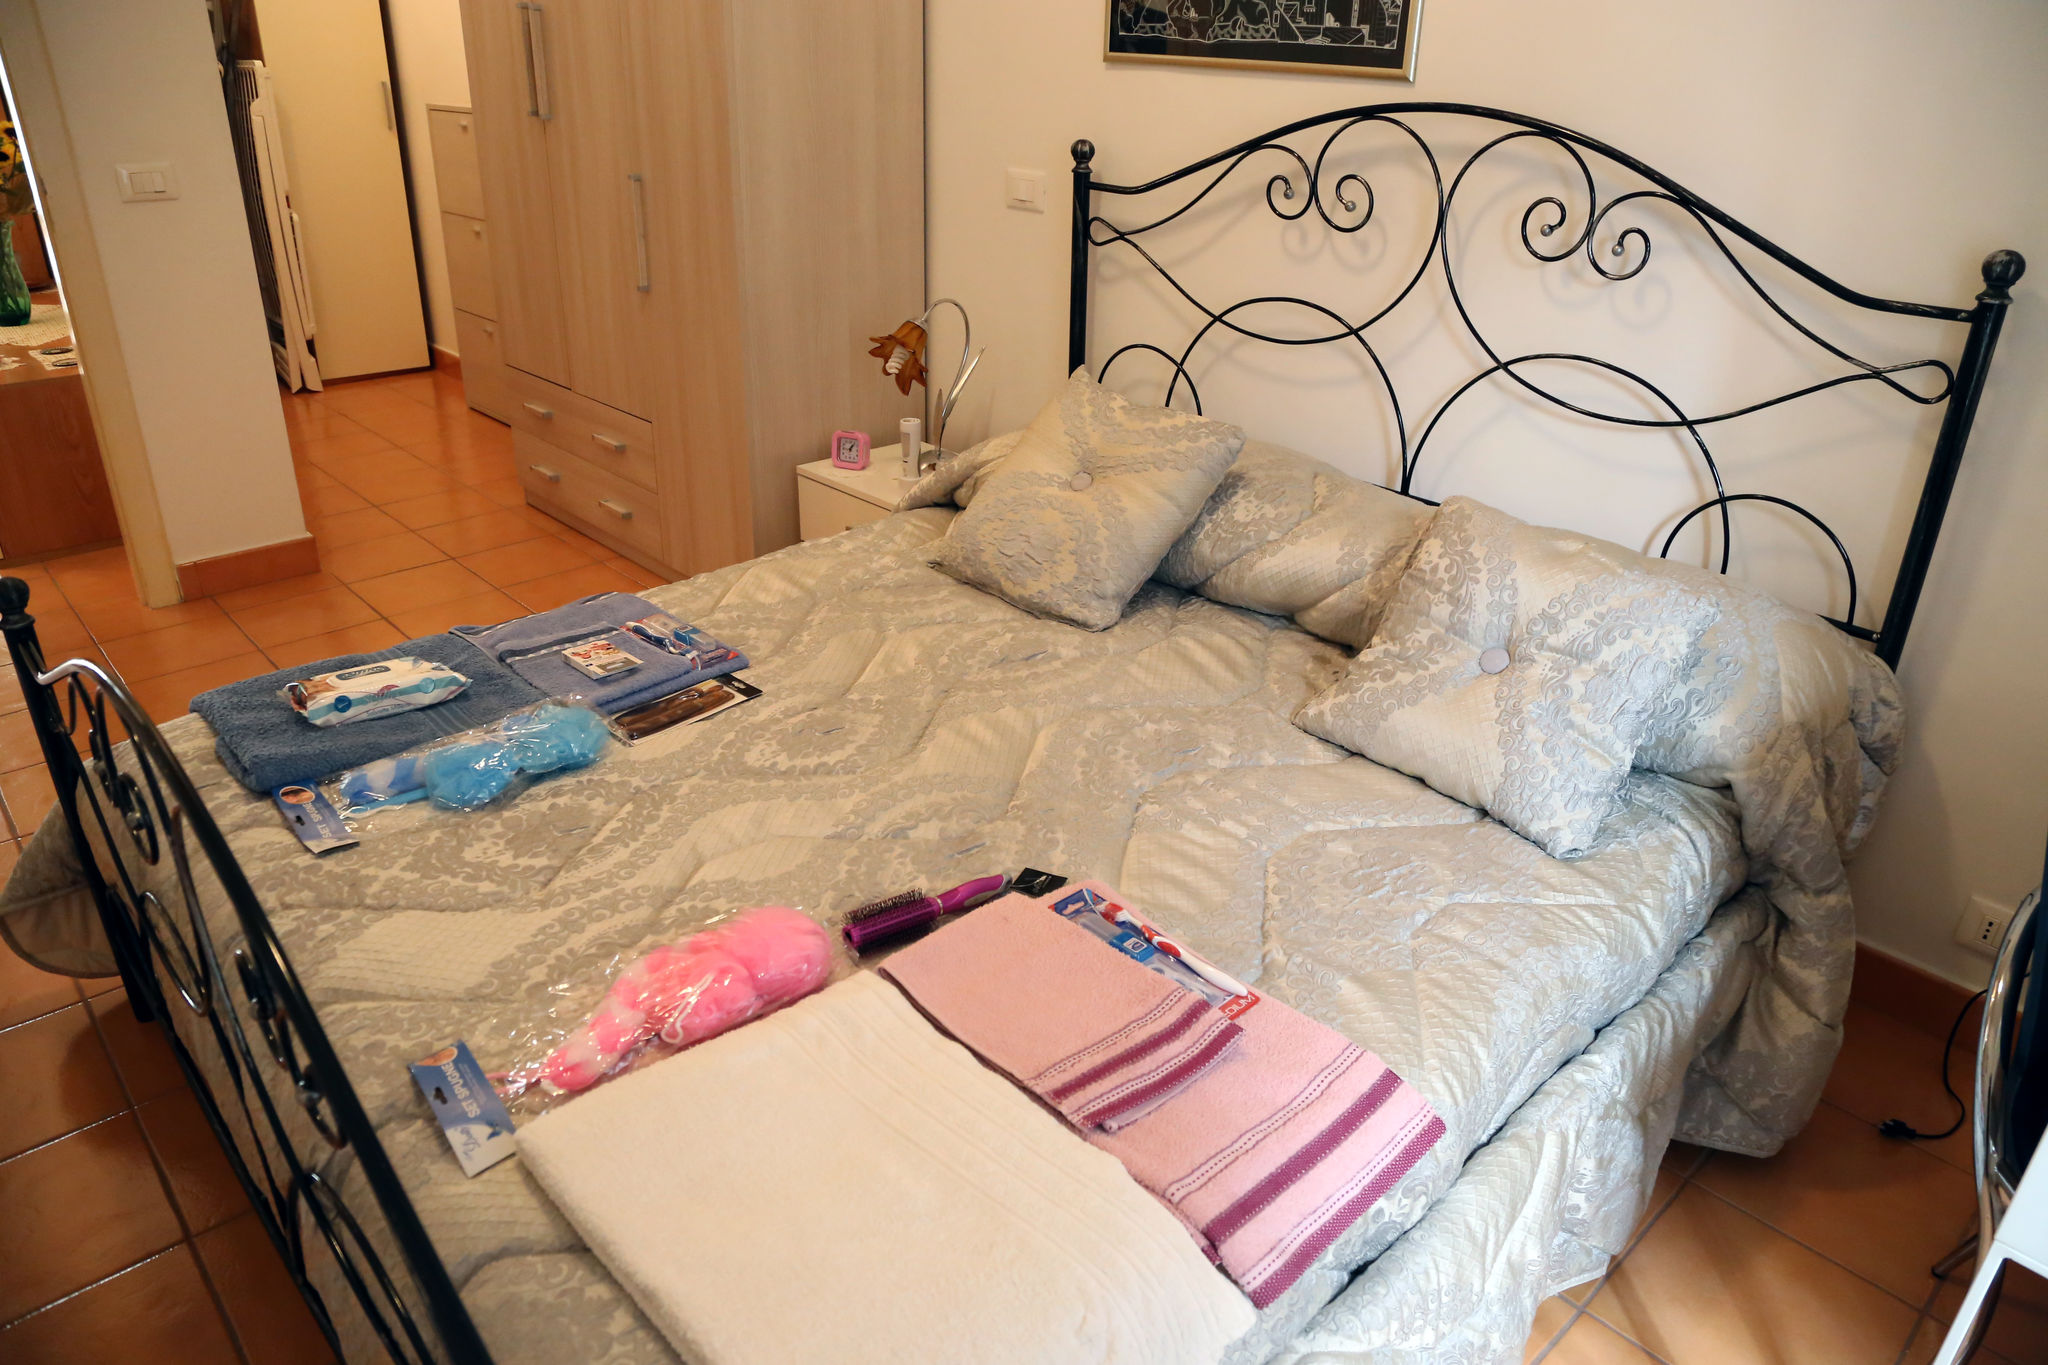 Ruim appartement op 10 minuten lopen van het historische centrum van Matera.